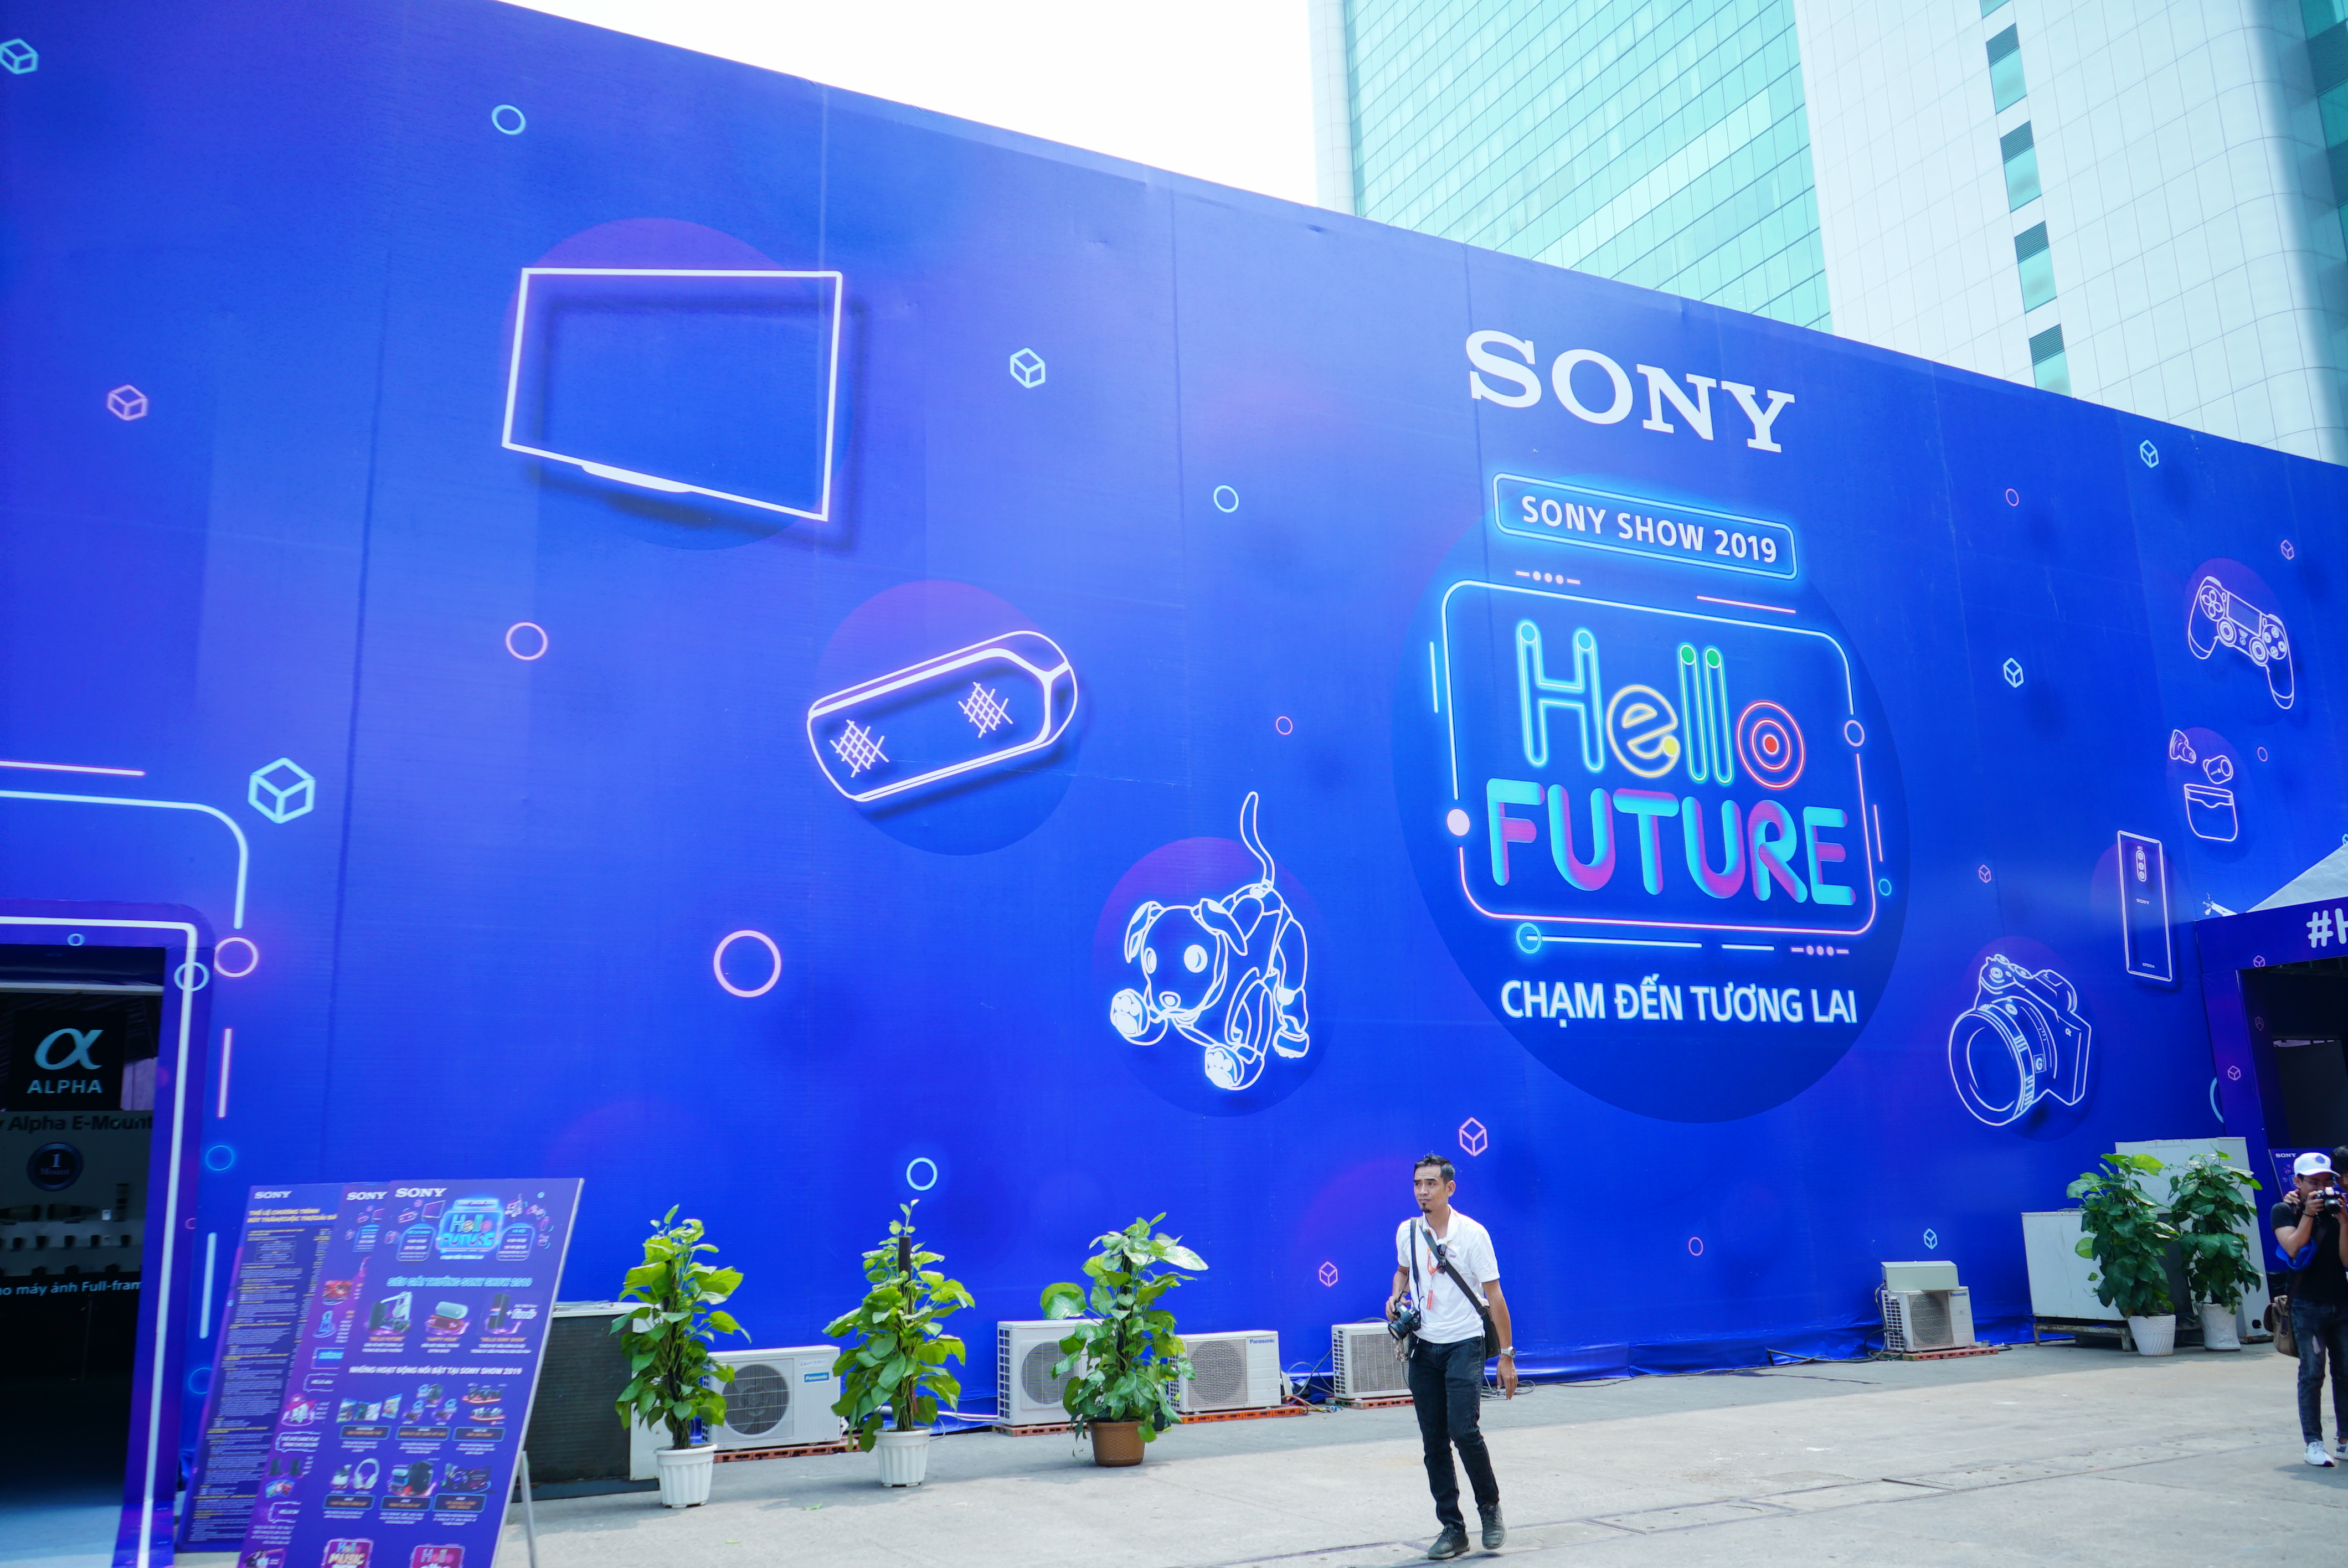 Khu vực bên ngoài sự kiện tràn ngập hình ảnh sản phẩm Sony và câu slogan "Hello Future" đầy ấn tượng